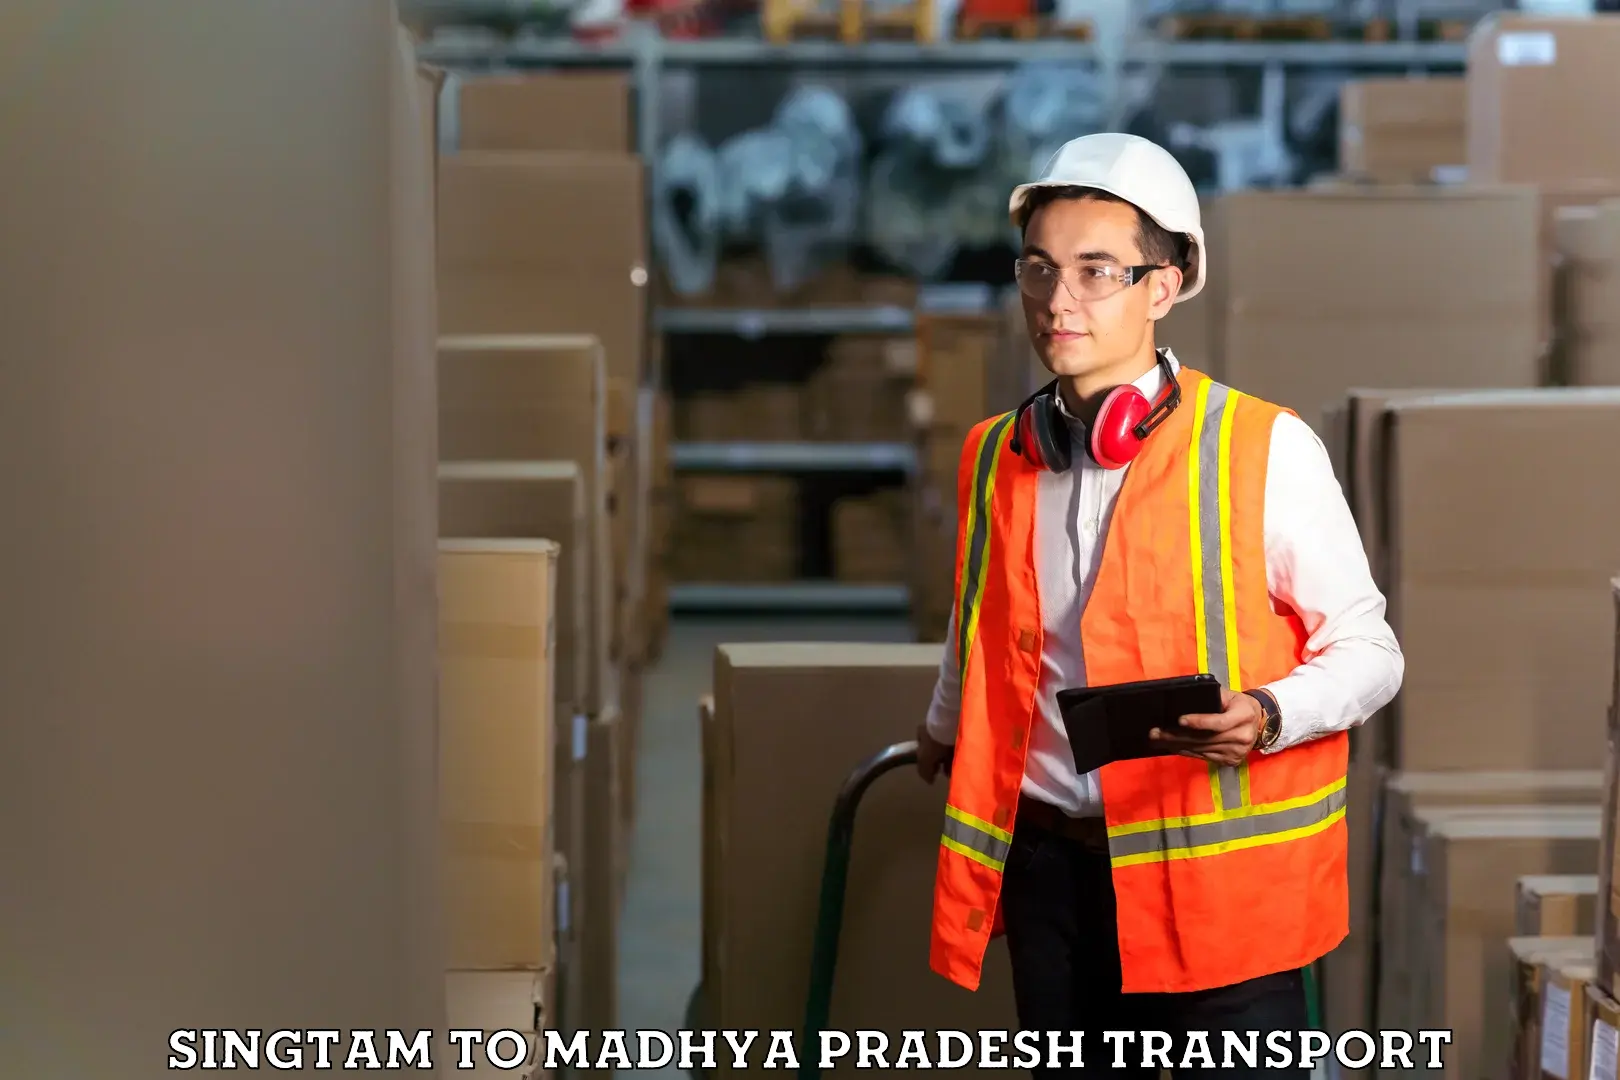 Truck transport companies in India Singtam to Madhya Pradesh